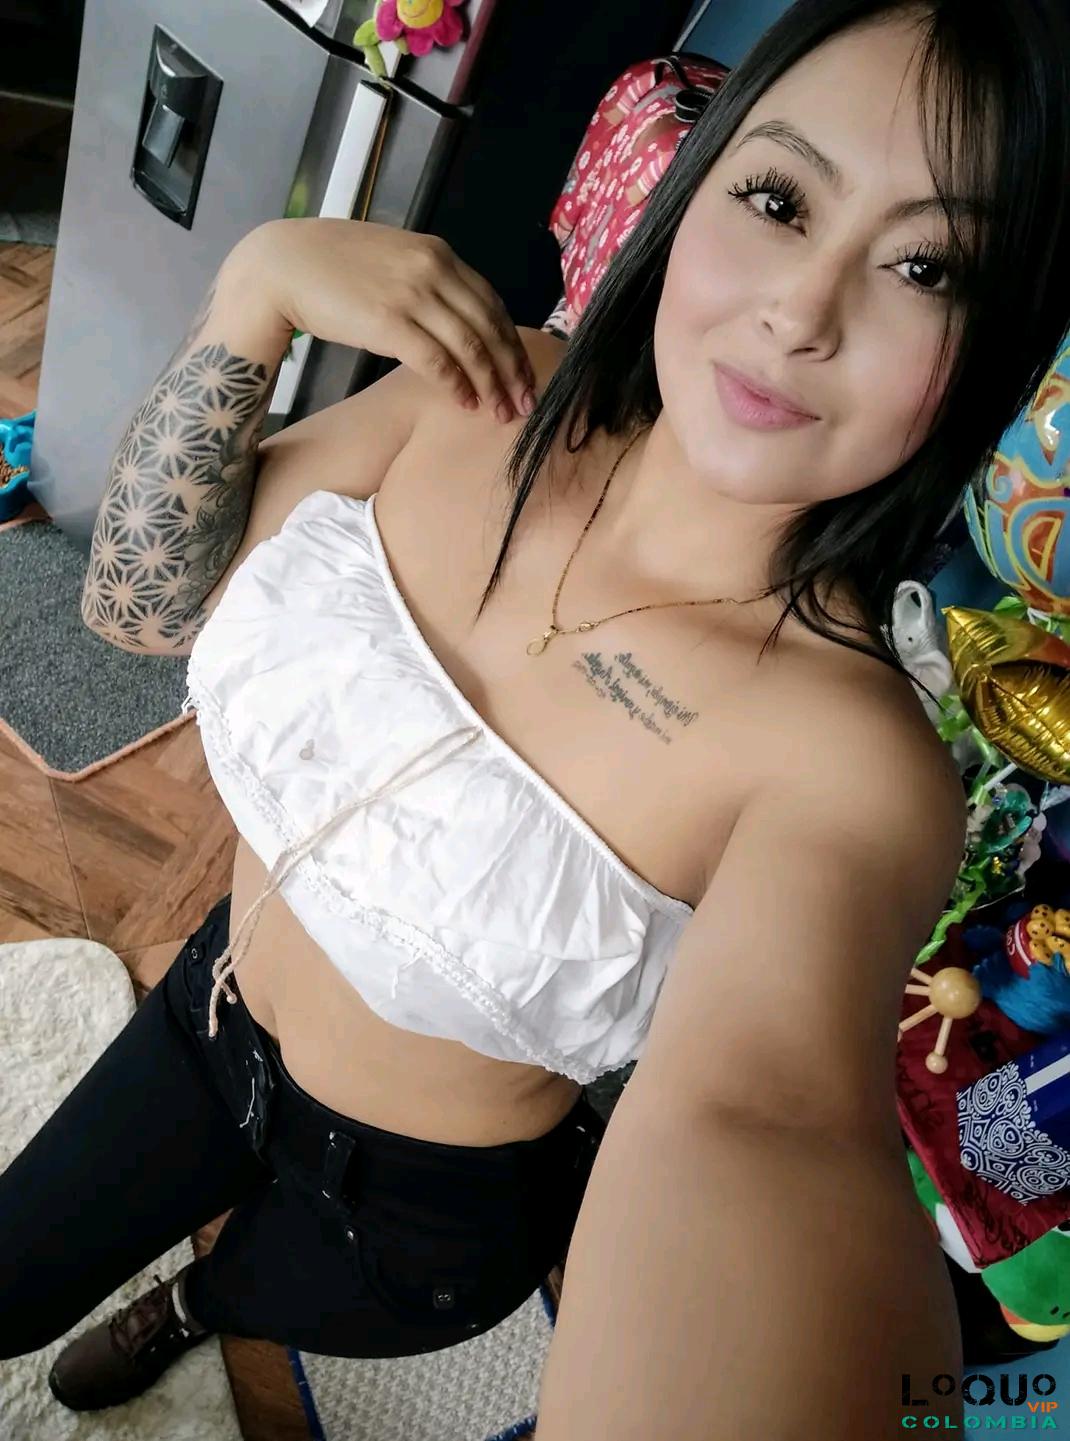 Putas Bogotá: Soy una chica sumise atractiva con ganas de satisfacer cualquier deseo sexual qu